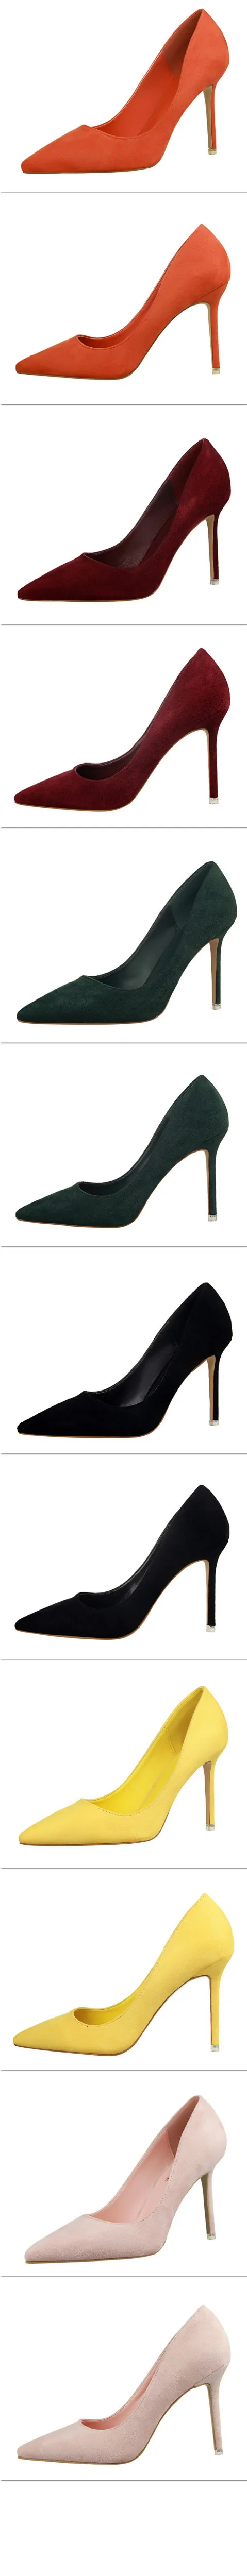 Женские туфли-лодочки; пикантные женские туфли на высоком каблуке-шпильке; свадебные туфли; женские офисные туфли на каблуке; замшевые туфли; классические женские туфли-лодочки